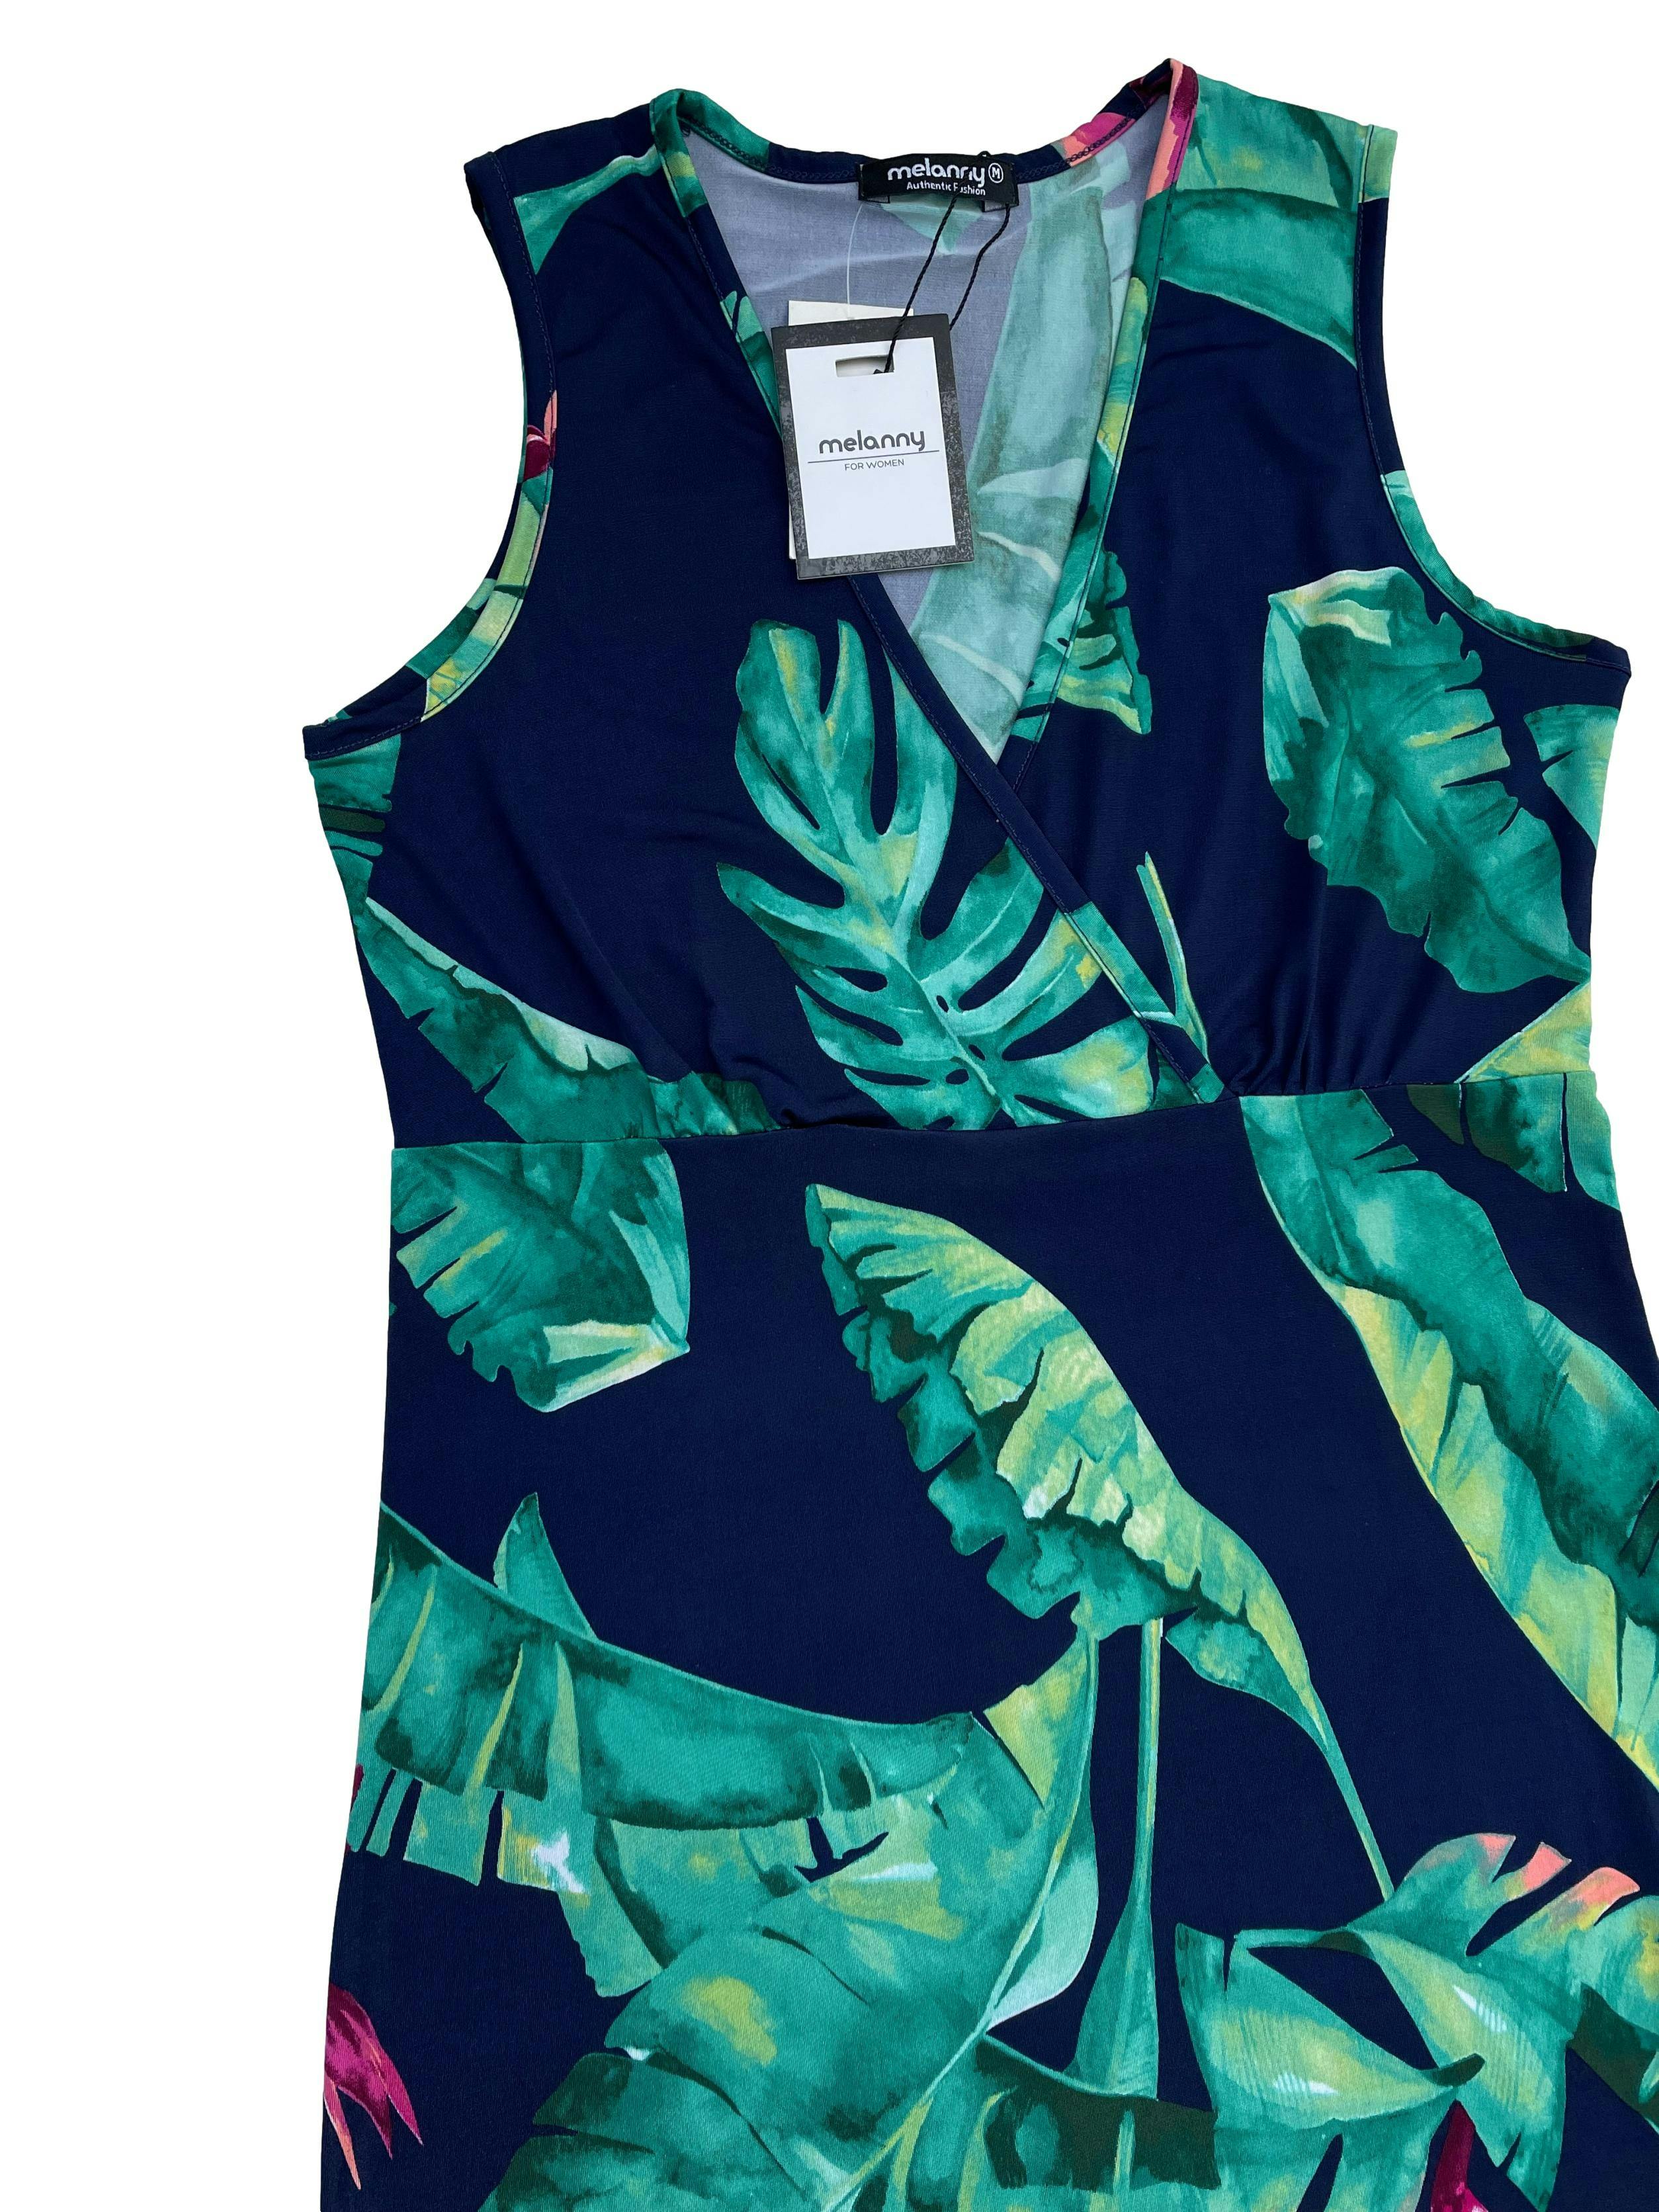 Vestido Melanny azul con hojas verdes, tela lycra, con aberturas laterales. Busto 80cm sin estirar Largo 127cm. Nuevo con etiqueta.